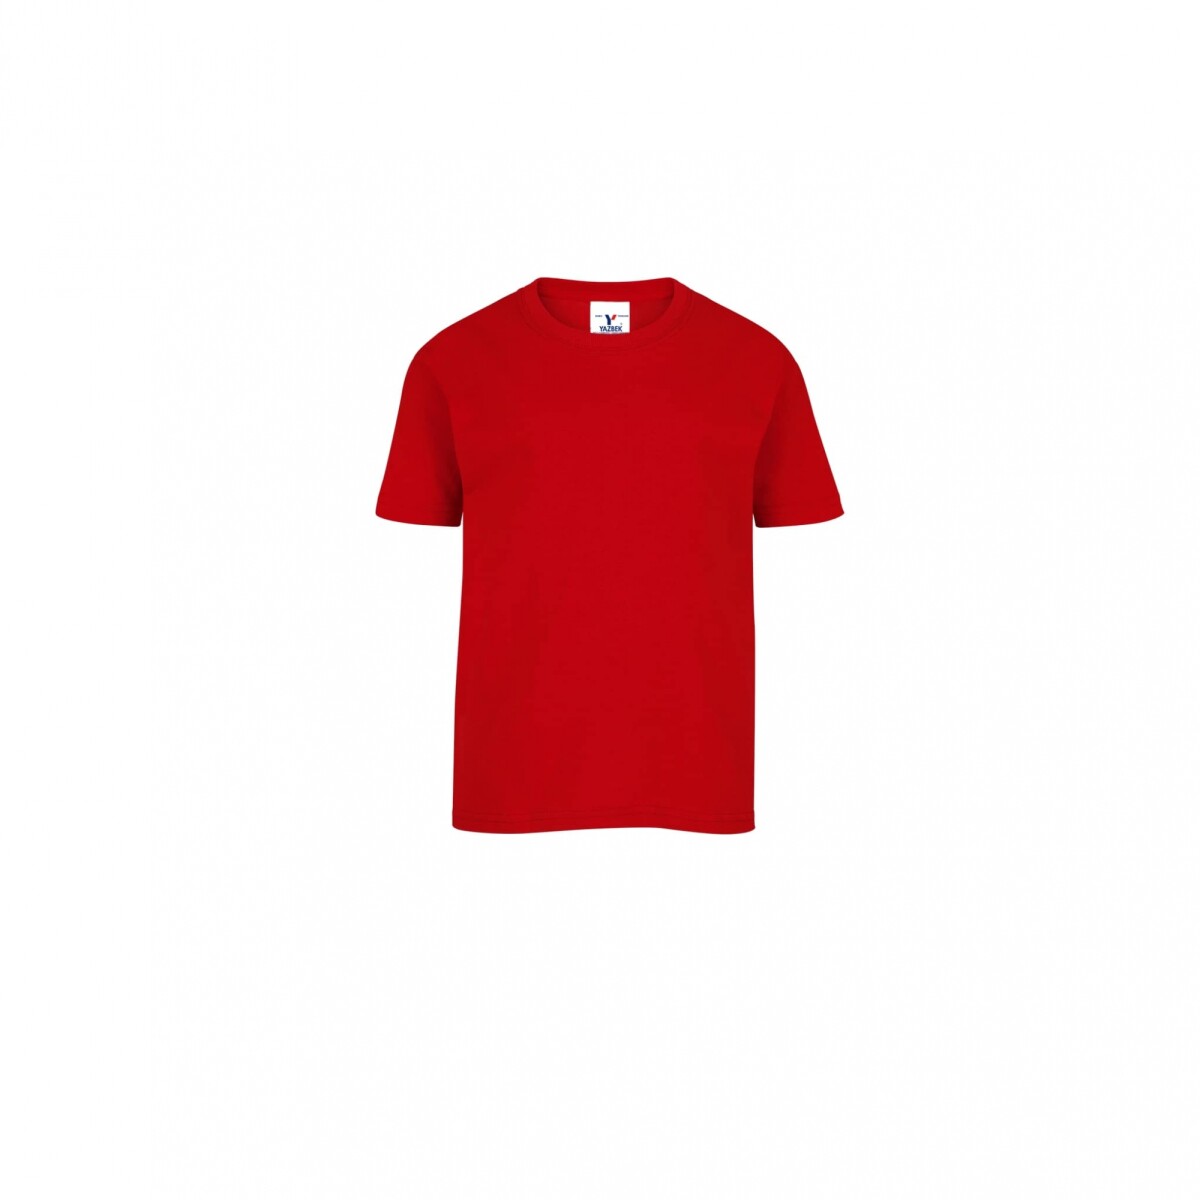 Camiseta a la base bebé - Rojo 